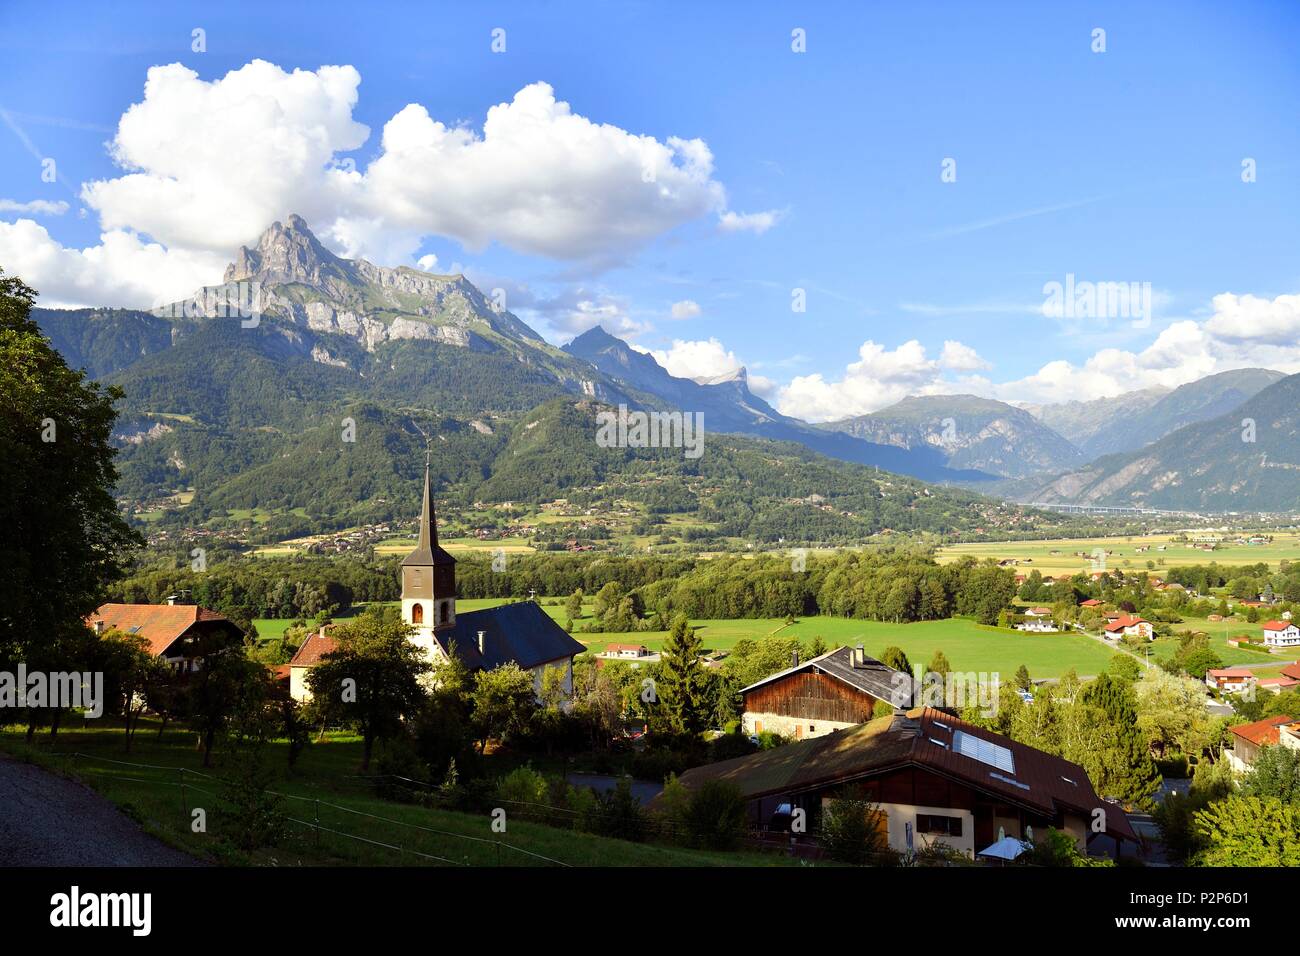 France, Haute Savoie, Domancy, the chaine des Aravis and the chaine du Reposoir Stock Photo